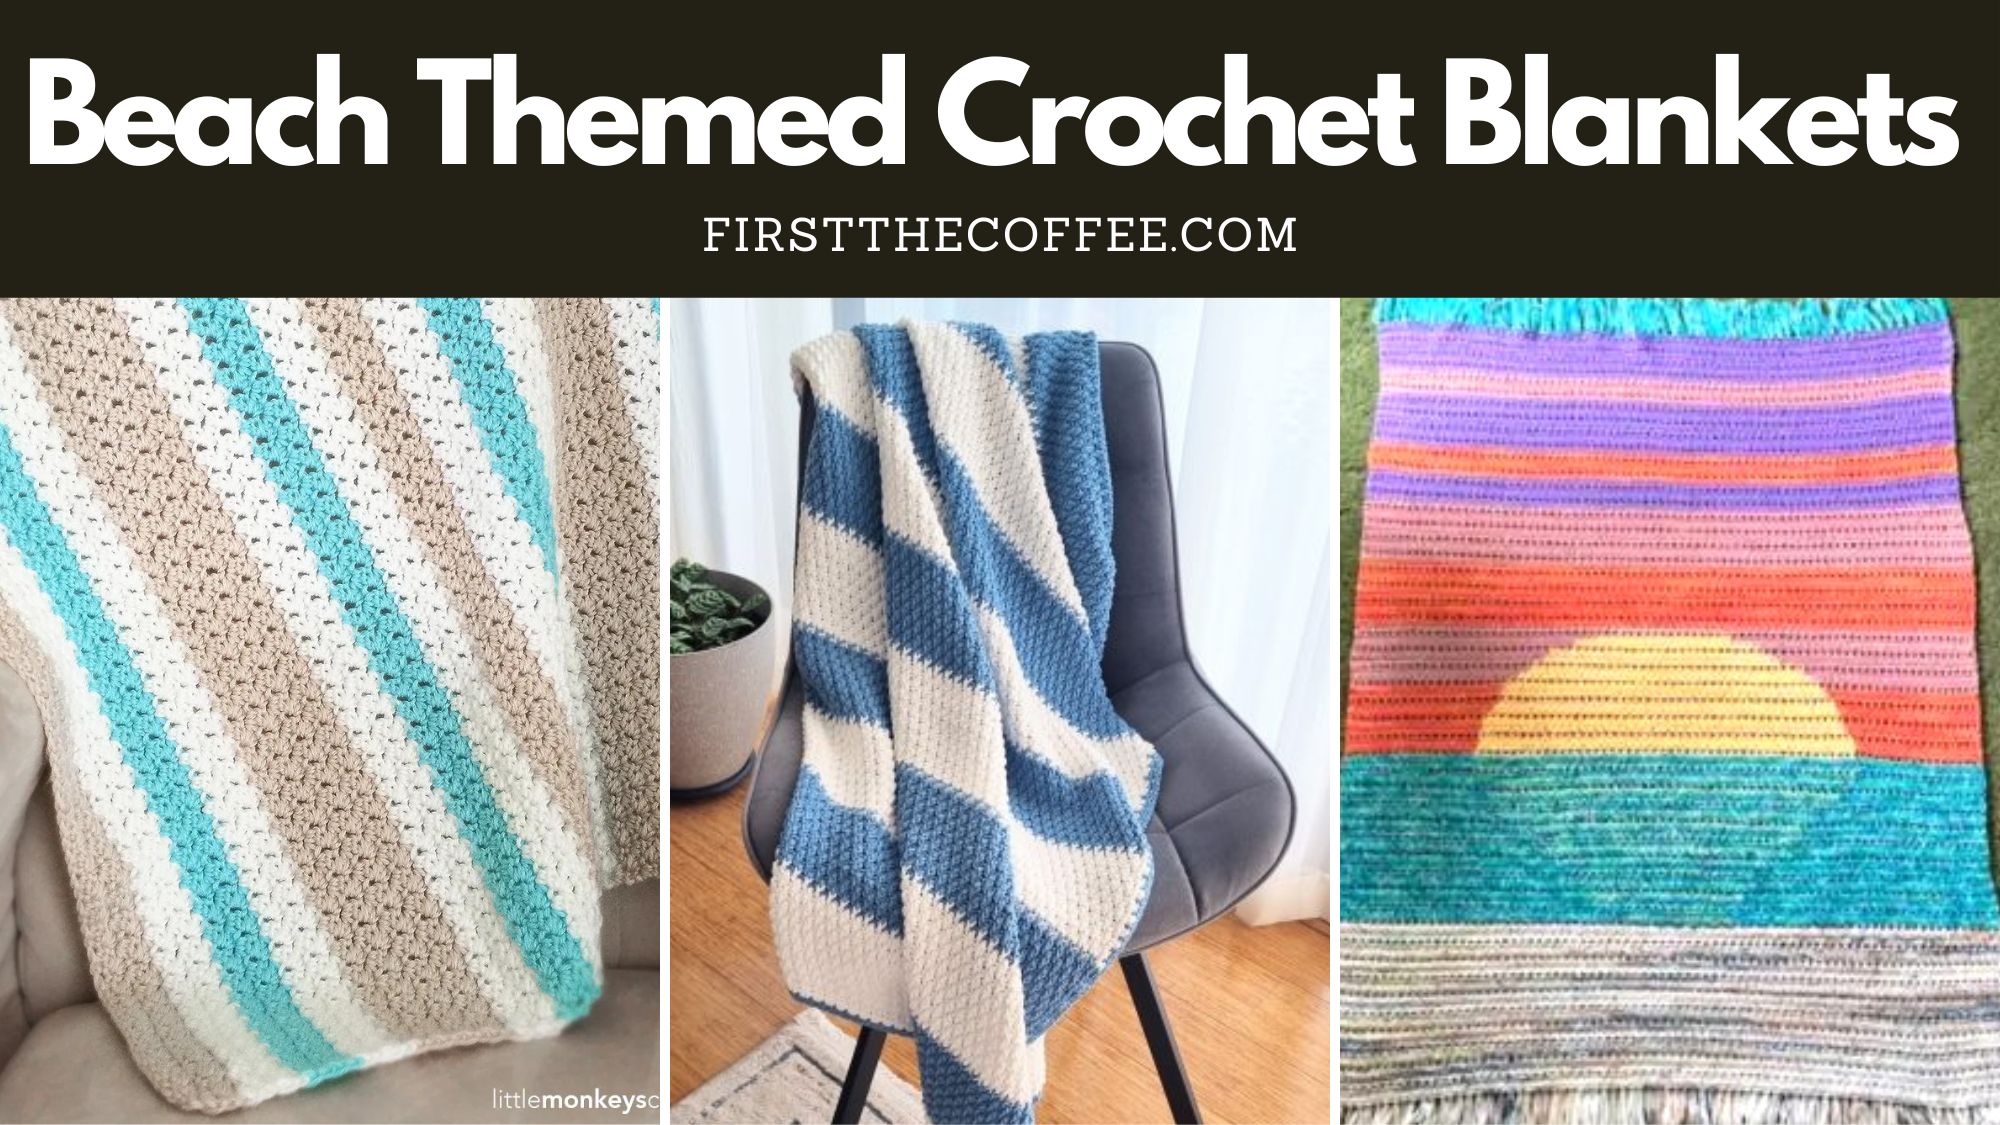 Crochet Blankets for Beach Decor Lovers